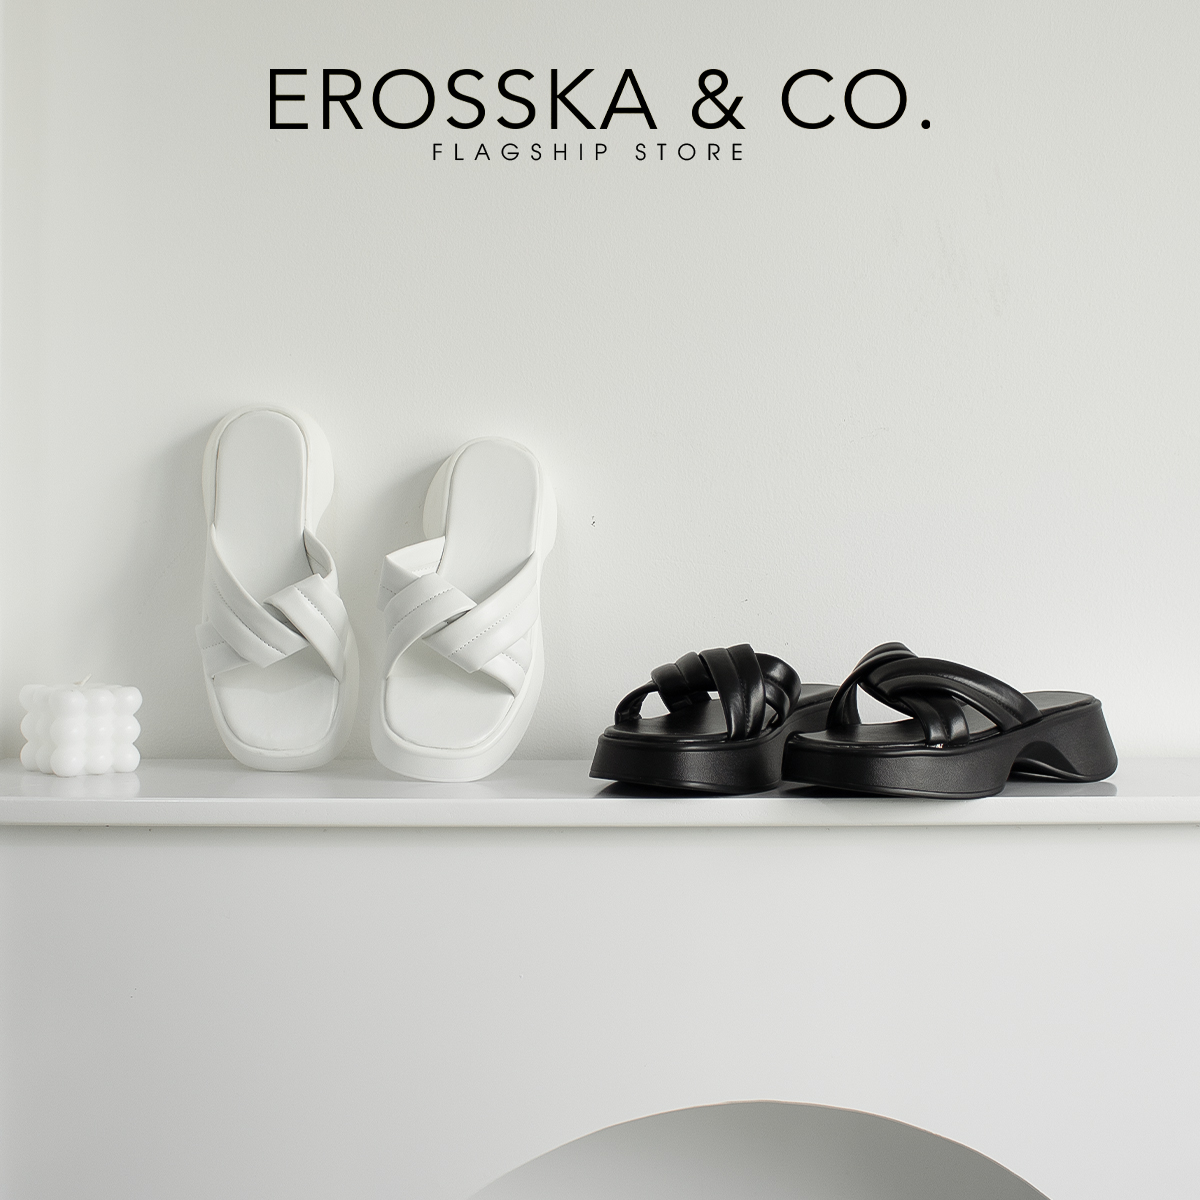 Erosska - Dép nữ quai chéo đế xuồng tôn dáng cao 3cm màu trắng - SB003